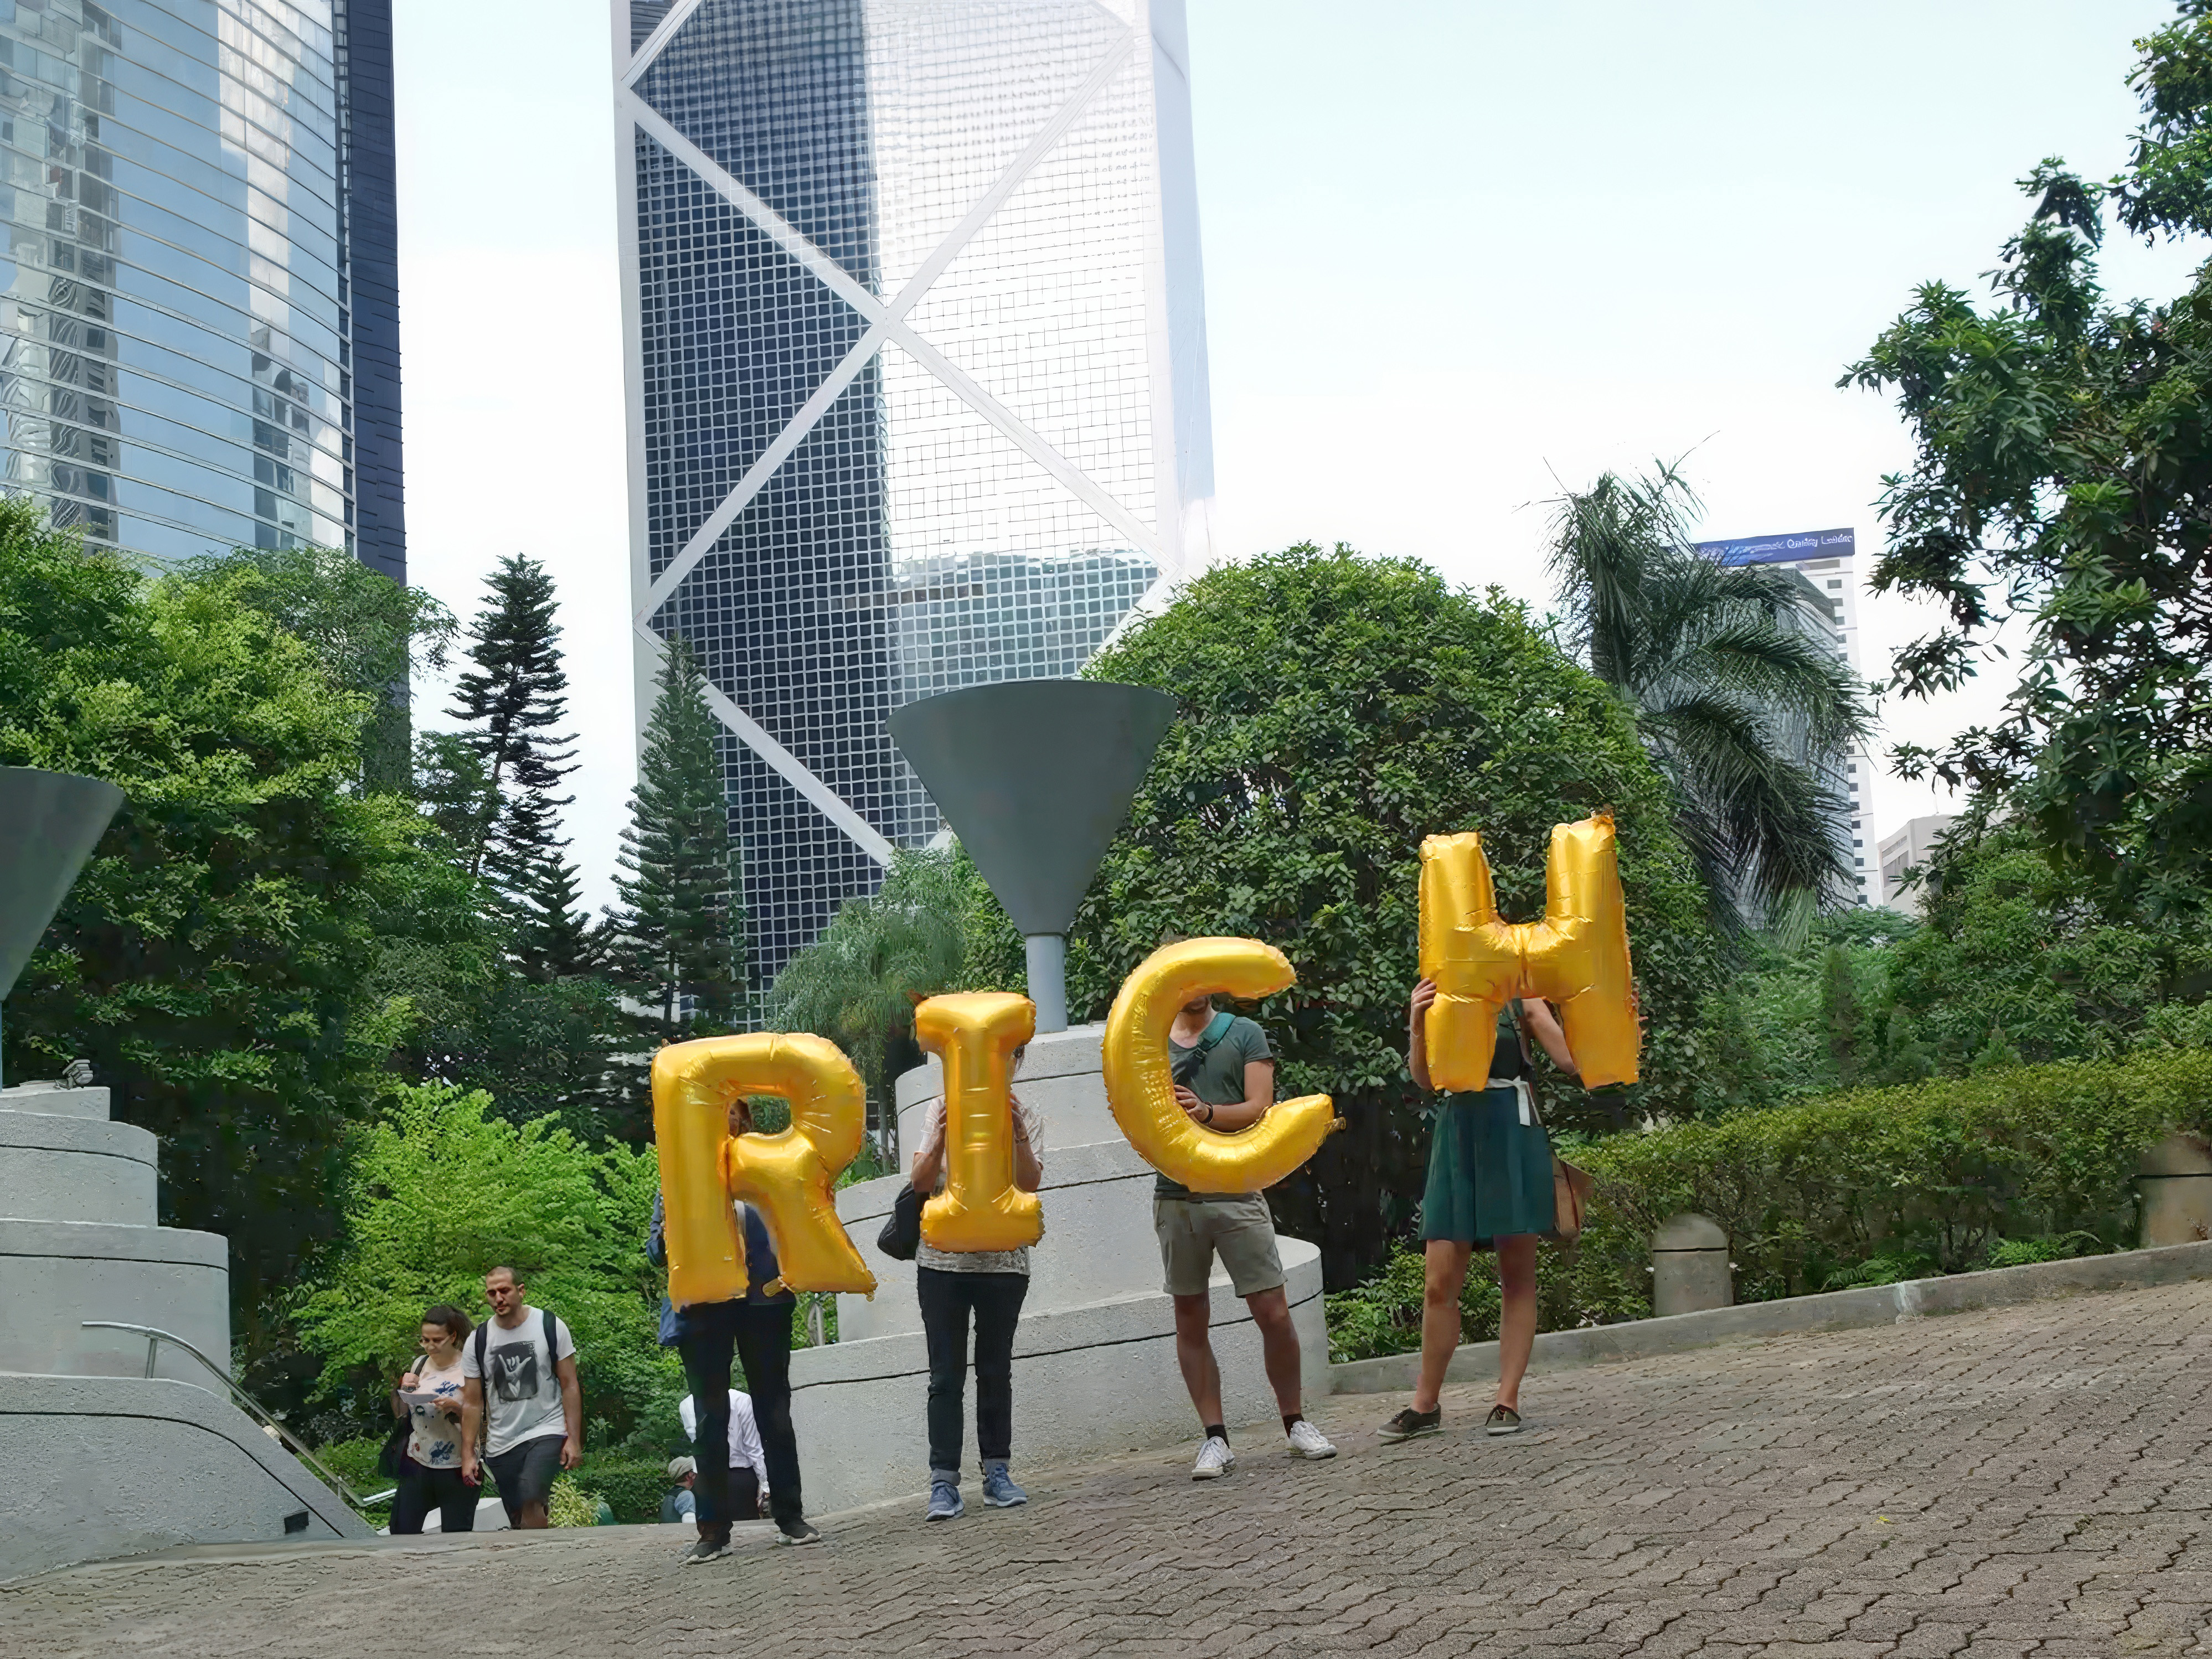 China, Hong Kong, Hong Kong Park (香港公園) - Rich, Silence was Golden, gold balloons